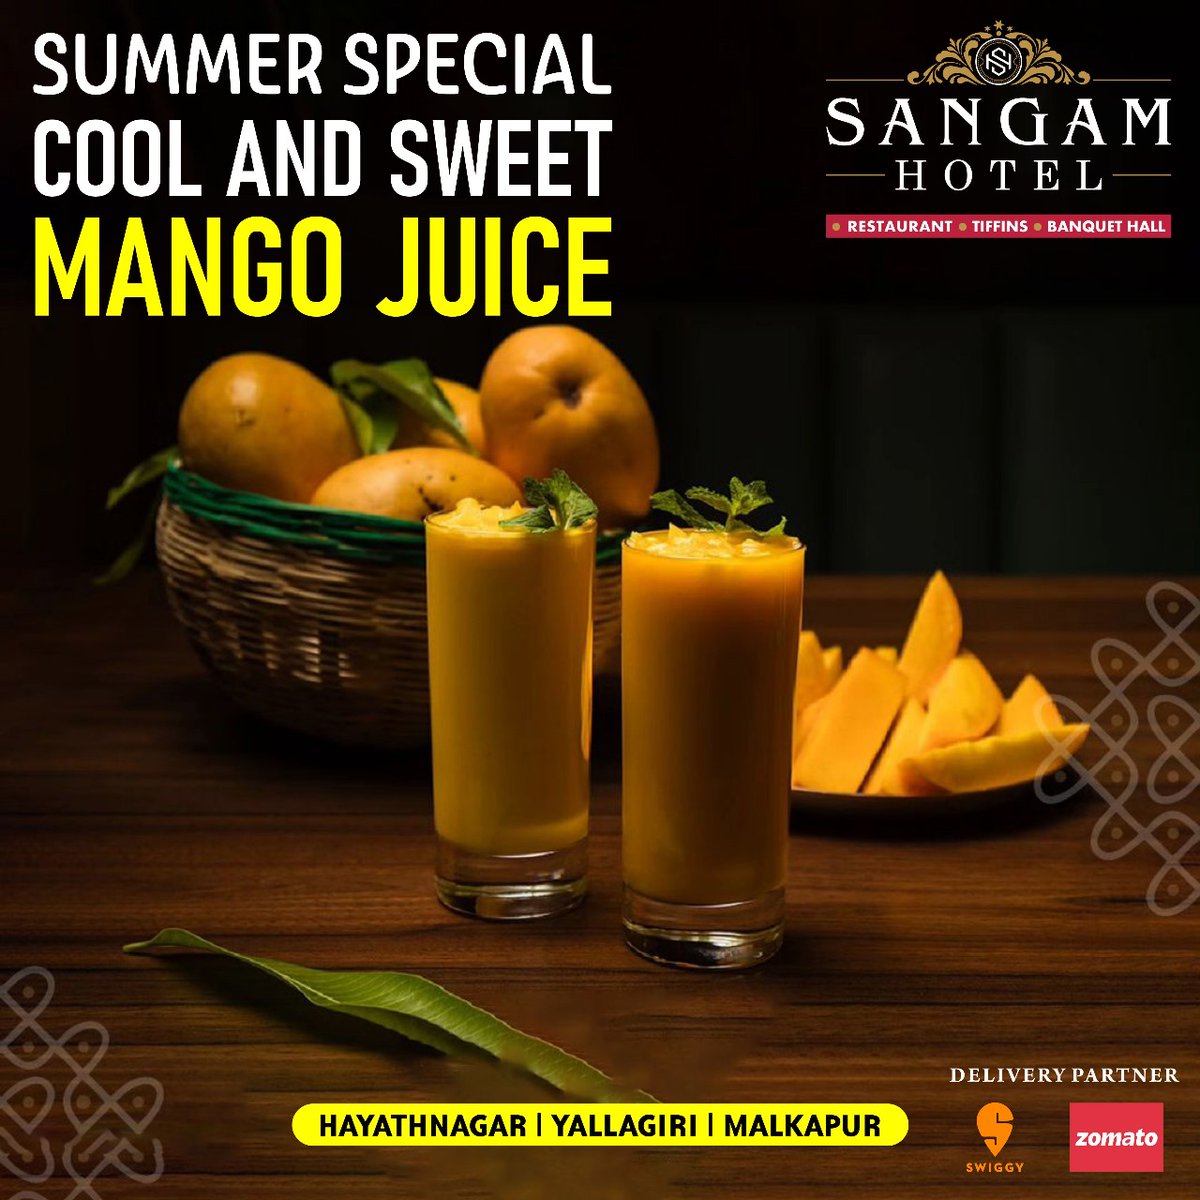 Summer Special cool and Sweet Mango Juice!!! @Sangamhotelsha

#mangojuice #mango #mangolover #mangosmoothie #food #mangoes #foodie #smoothie #foodporn #fruits #healthylifestyle #foodphotography #fruit #detox #mangostickyrice #mangoseason #mangos #foodblogger #juice #healthyfood